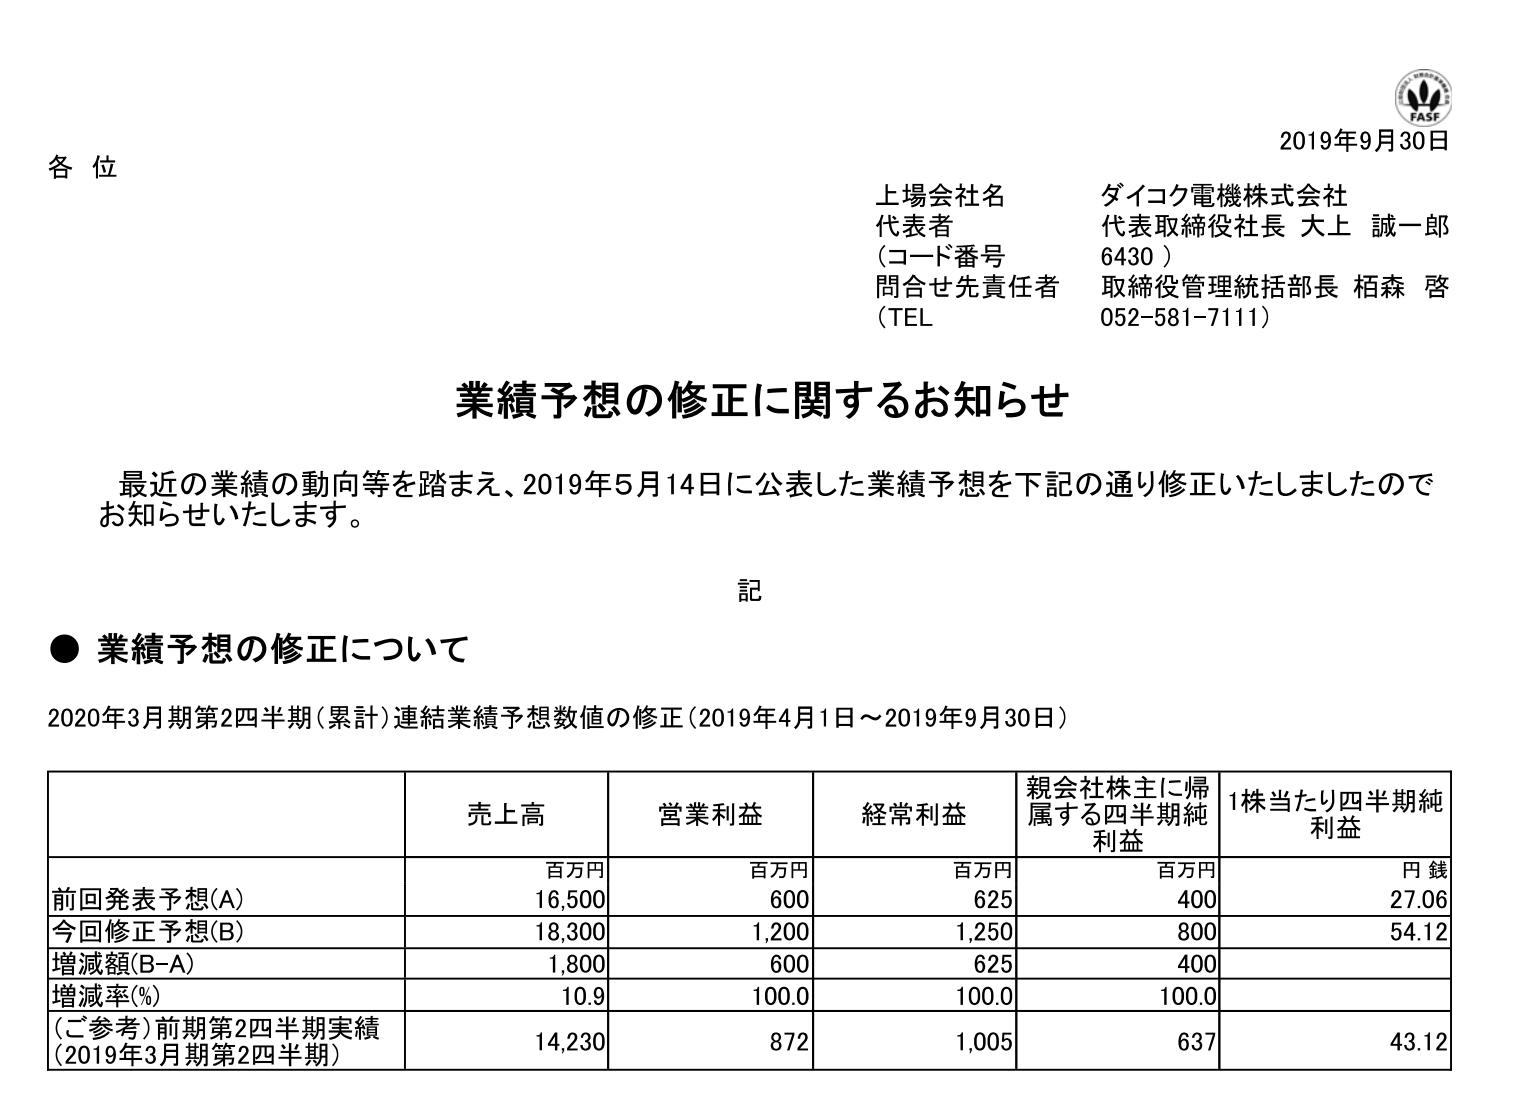 ダイコク電機 業績予想をプラス修正 売上高 18億円 営業利益 6億円 呼び出しランプ好調 P Media Japan